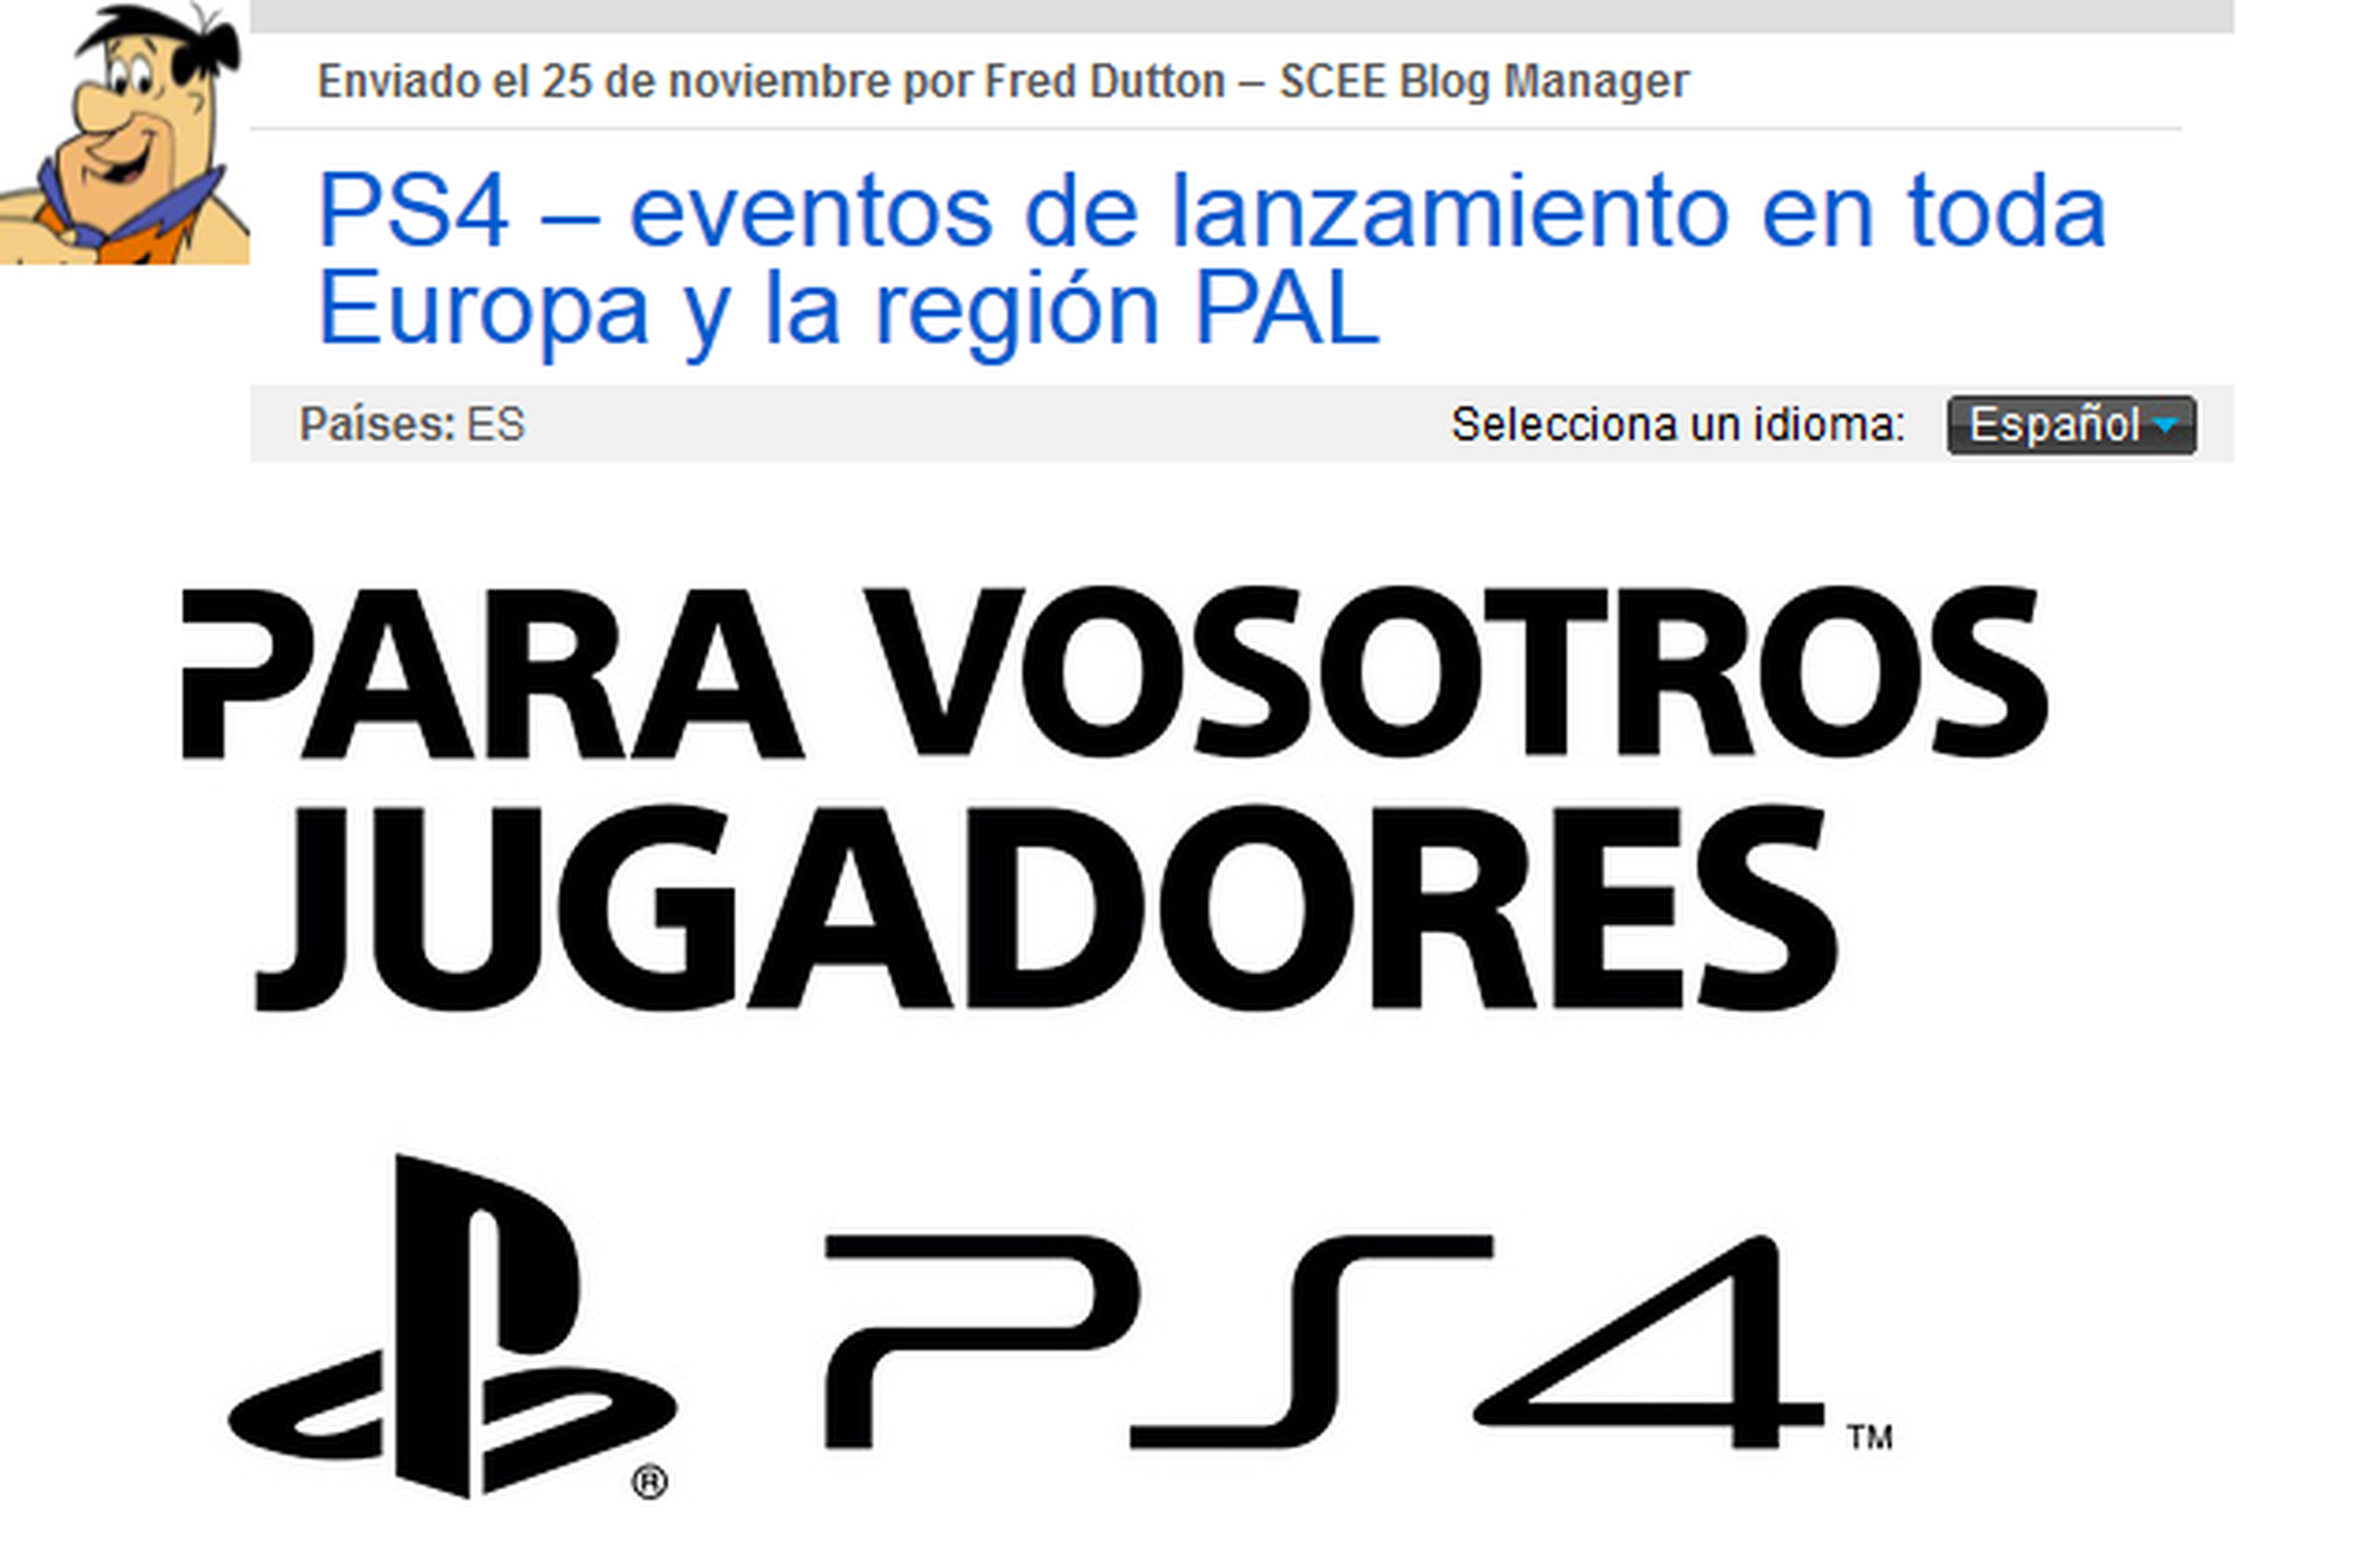 Vive en Madrid la llegada de PS4 con Sony un día antes